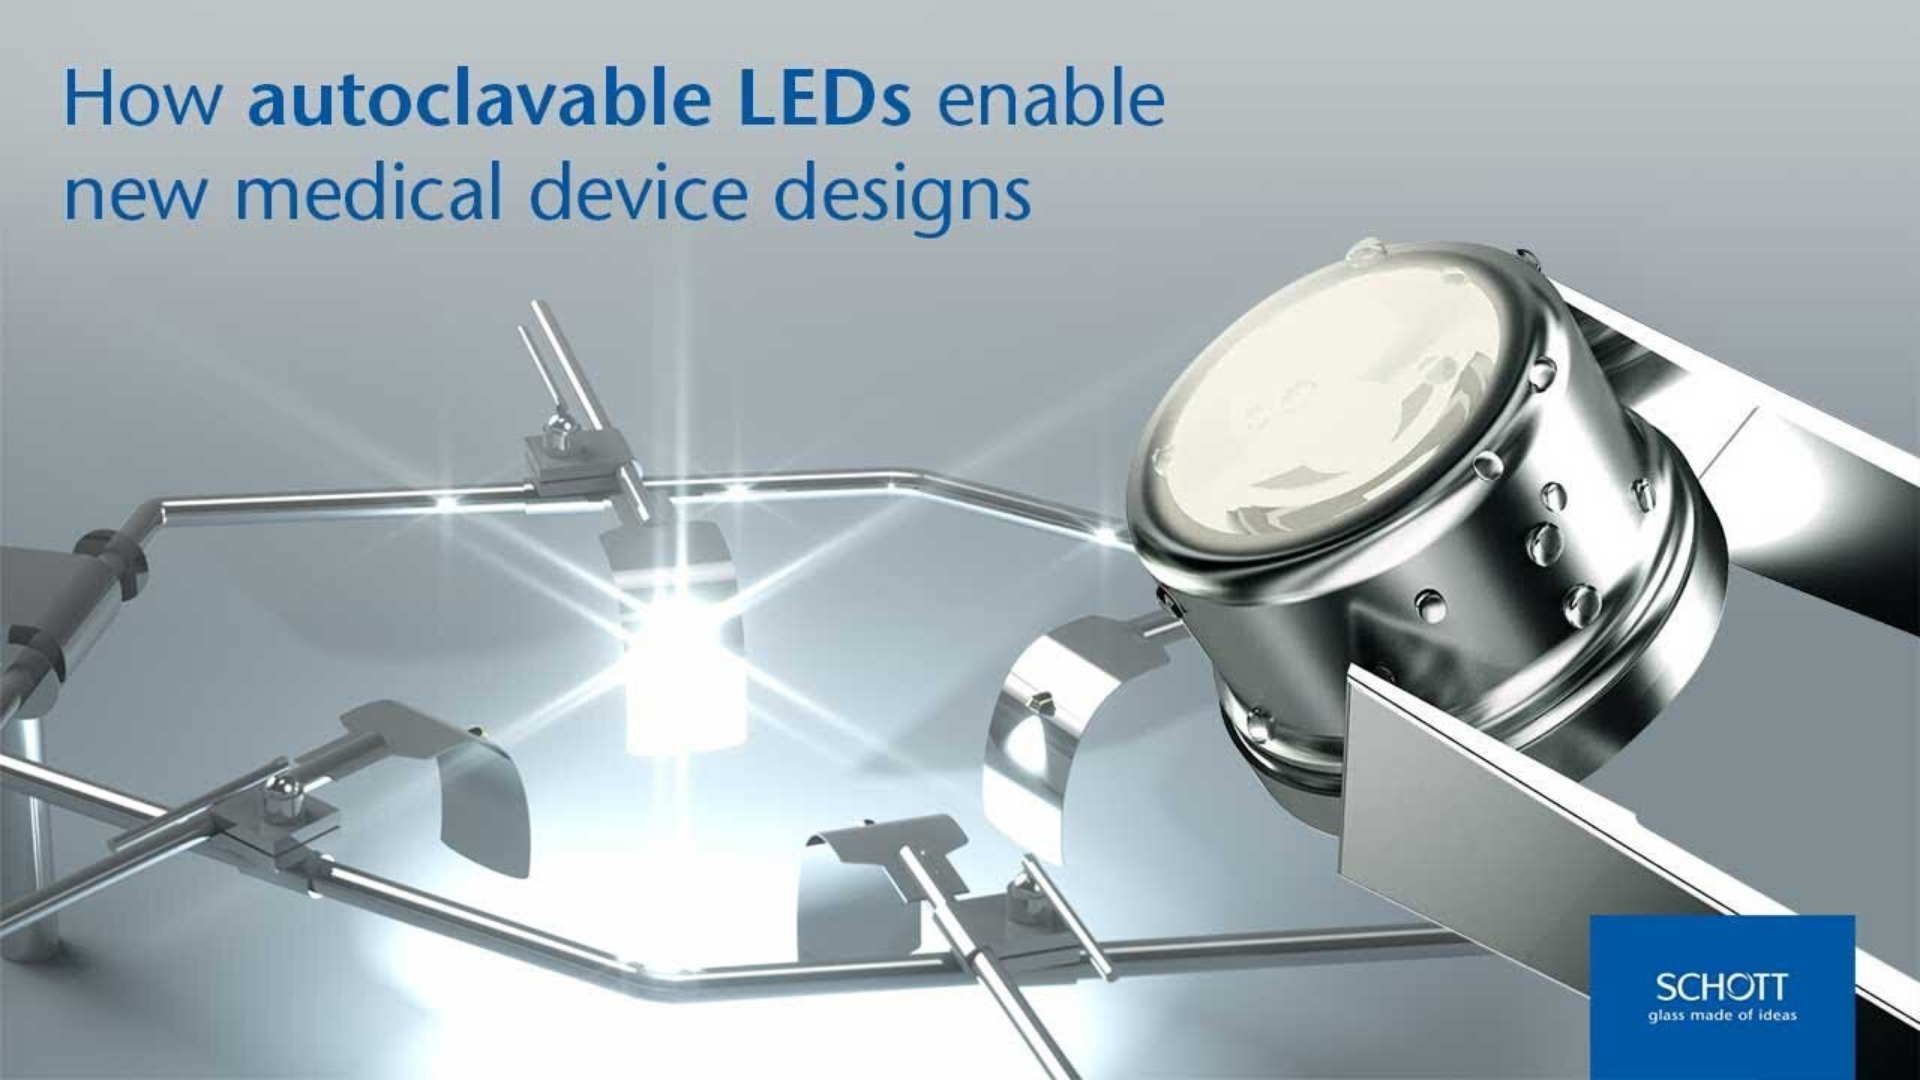 オートクレーブ可能なSCHOTT Solidur® LEDが新しい医療機器の設計を可能にする仕組みについては、こちらご覧ください